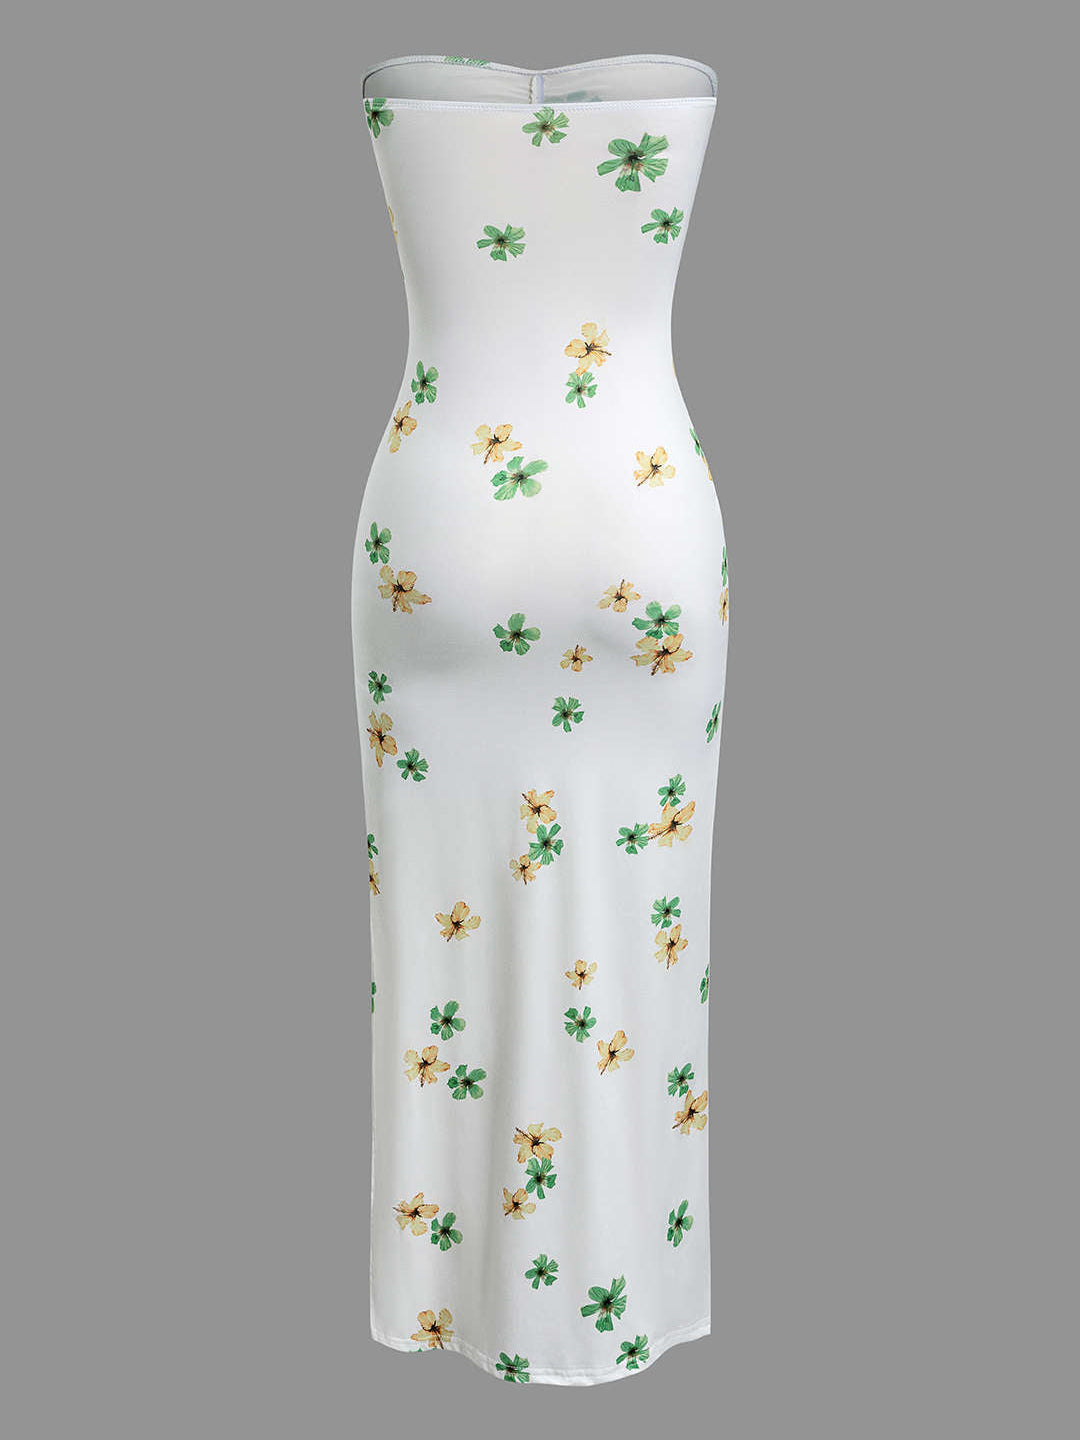 Maxi šaty bez ramínek s květinovým potiskem